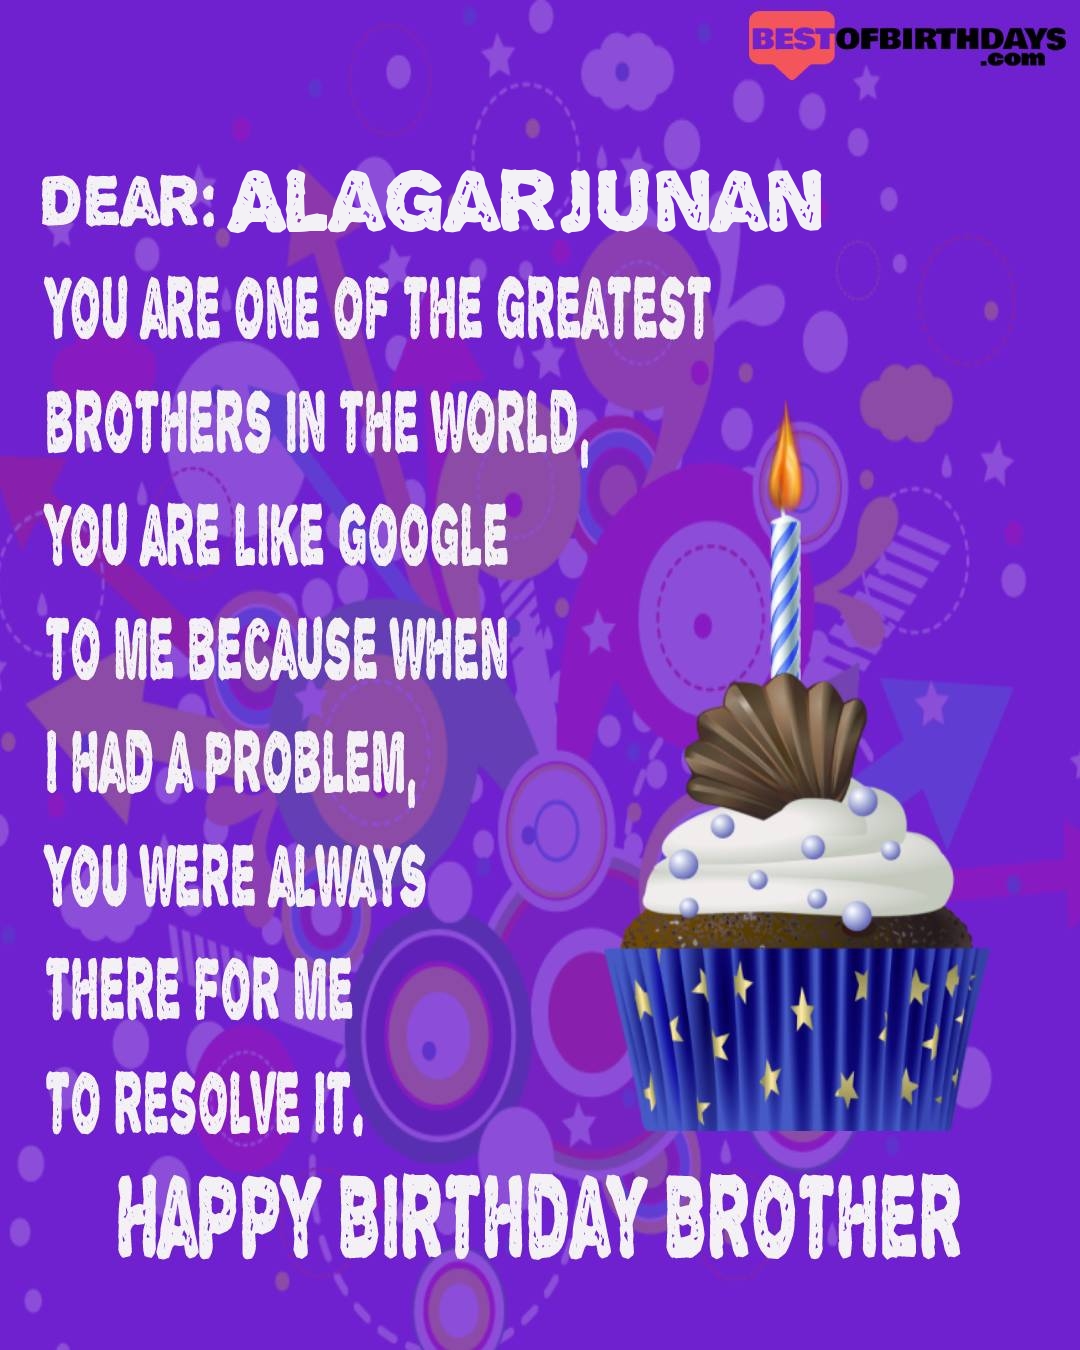 Happy birthday alagarjunan bhai brother bro